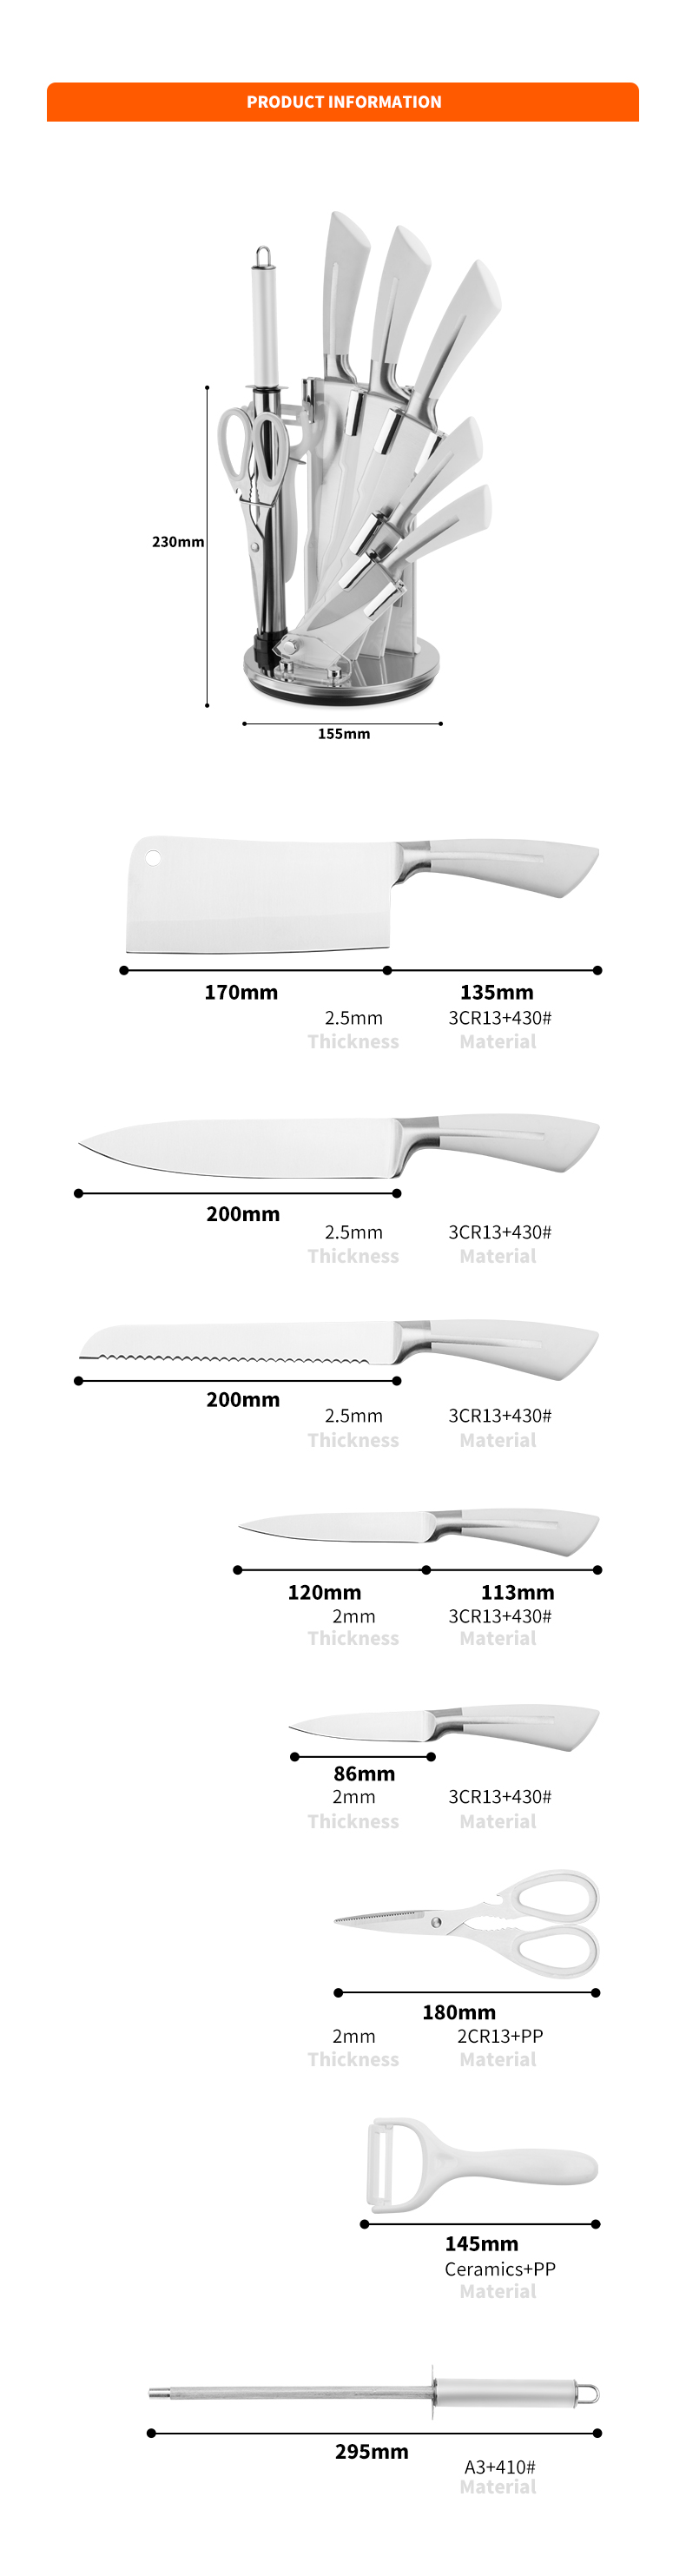 د G127 شخصي لیبل نوی ډیزاین 8pcs 3cr13 سټینلیس سټیل شیف چاقو د پخلنځي چاقو د اکیلی بلاک-ZX سره سیټ | د پخلنځي چاقو، د پخلنځي وسیلې، د سیلیکون کیک مولډ، د پرې کولو تخته، د پخولو وسیلې سیټونه، شیف چاقو، د سټیک چاقو، سلیسر چاقو، یوټیلټي چاقو، پیرینګ چاقو، د چاقو بلاک، د چاقو سټینډ، سانتوکو چاقو، د کوچنیانو چاقو، پلاستیک نانکینګ چاقو، رنګین چاقو، د سټینلیس سټیل چاقو، کین خلاصونکی، د بوتل خلاصونکی، د چای ټینر، ګرټر، هګۍ بیټر، د نایلان پخلنځي وسیله، د سیلیکون د پخلنځي وسیله، د پخلنځي کټر، د پخلي چاقو سیټ، د چاقو تیزونکی، پیلر، د کیک چاقو، چاقو چاقو، سیلیکون سپتولر، سیلیکون چمچ، د خوړو ټانګ، جعل شوی چاقو، د پخلنځي کینچۍ، د کیک پخولو چاقو، د ماشومانو د پخلي چاقو، د نقاشۍ چاقو